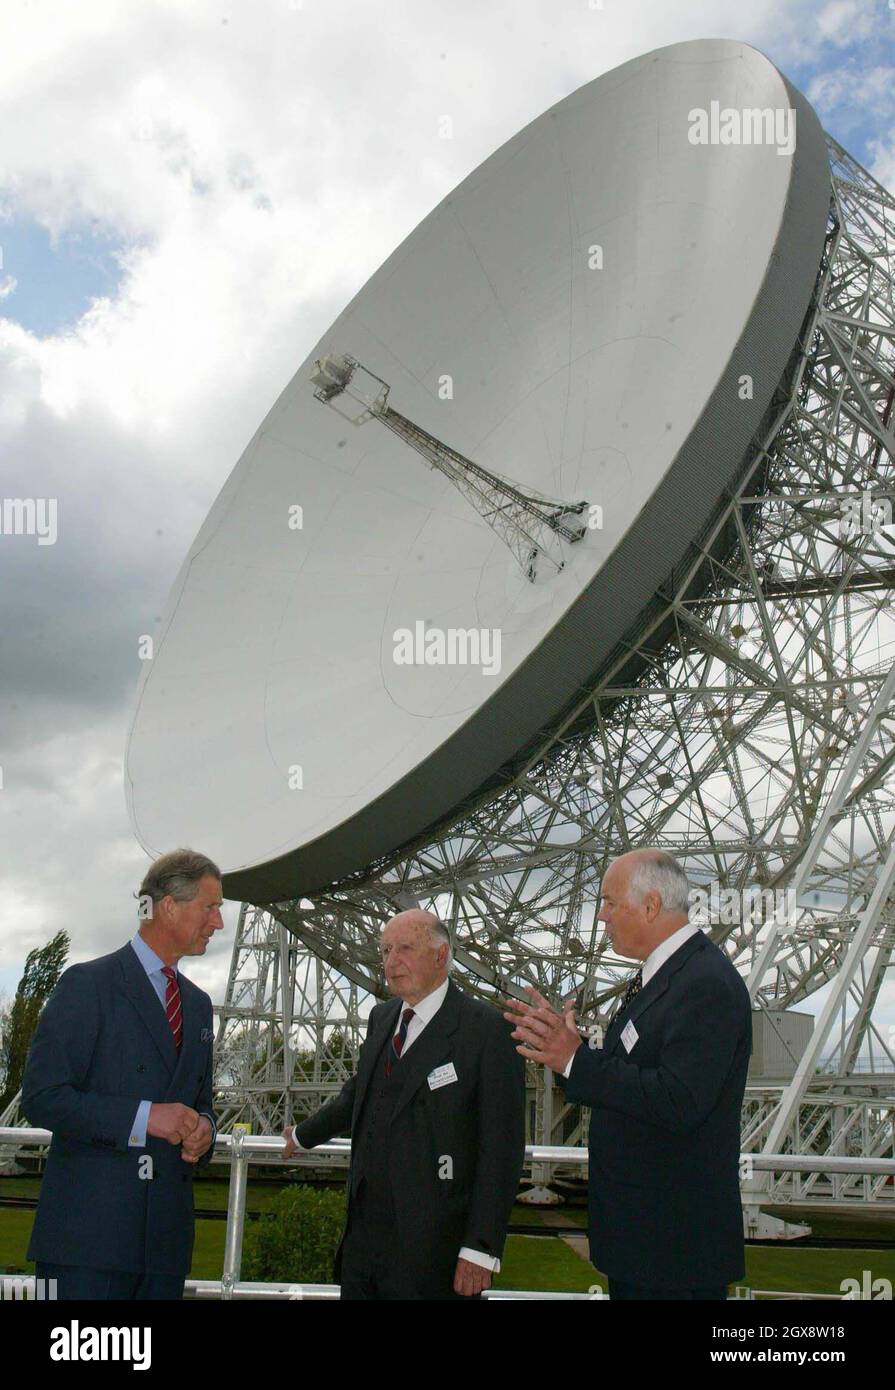 Der Prinz von Wales spricht mit Sir Bernard Lovell (C) und Prof. Andrew Lyne (R) während eines Besuchs am Jodrell Bank Observatory in Cheshire. Halbe Länge, Royals, Anzug Â©Anwar Hussein/allaction.co.uk Stockfoto